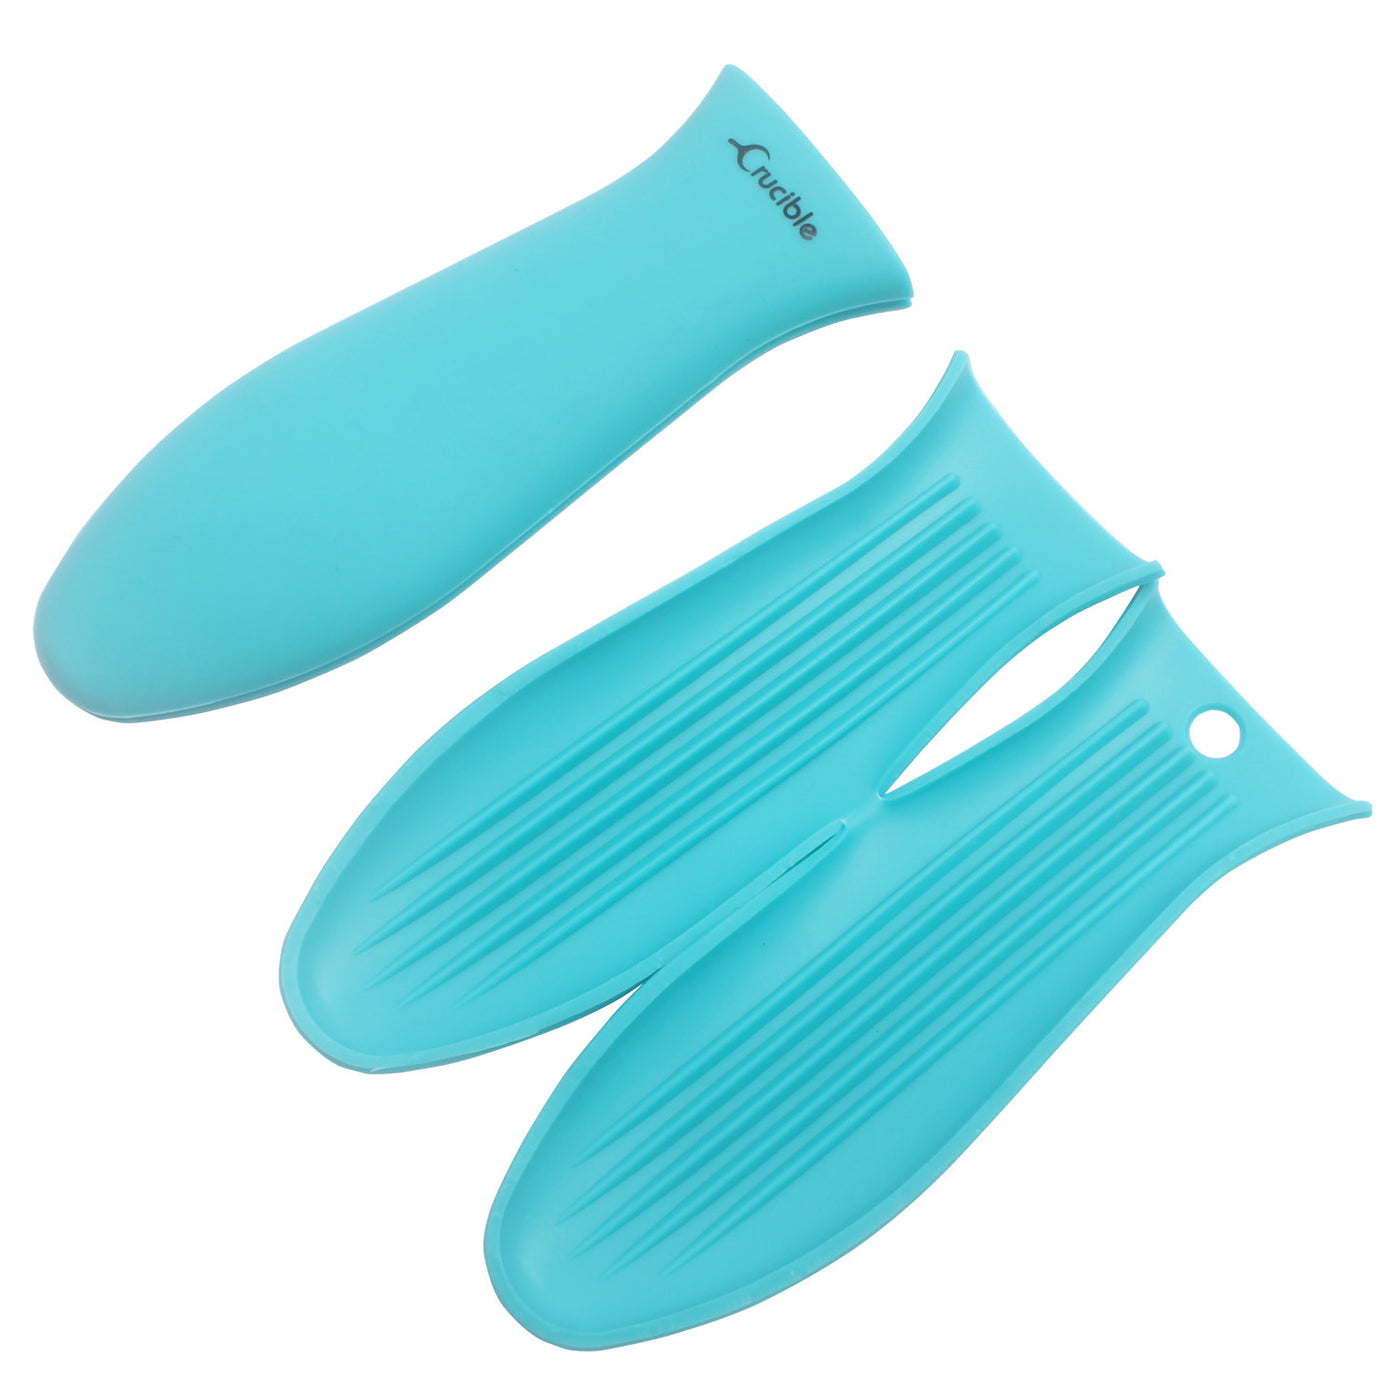 Support de poignée chaude en silicone + support d'assistance, manique (paquet de 2 turquoise) - Poignée de manche, couvercle de poignée